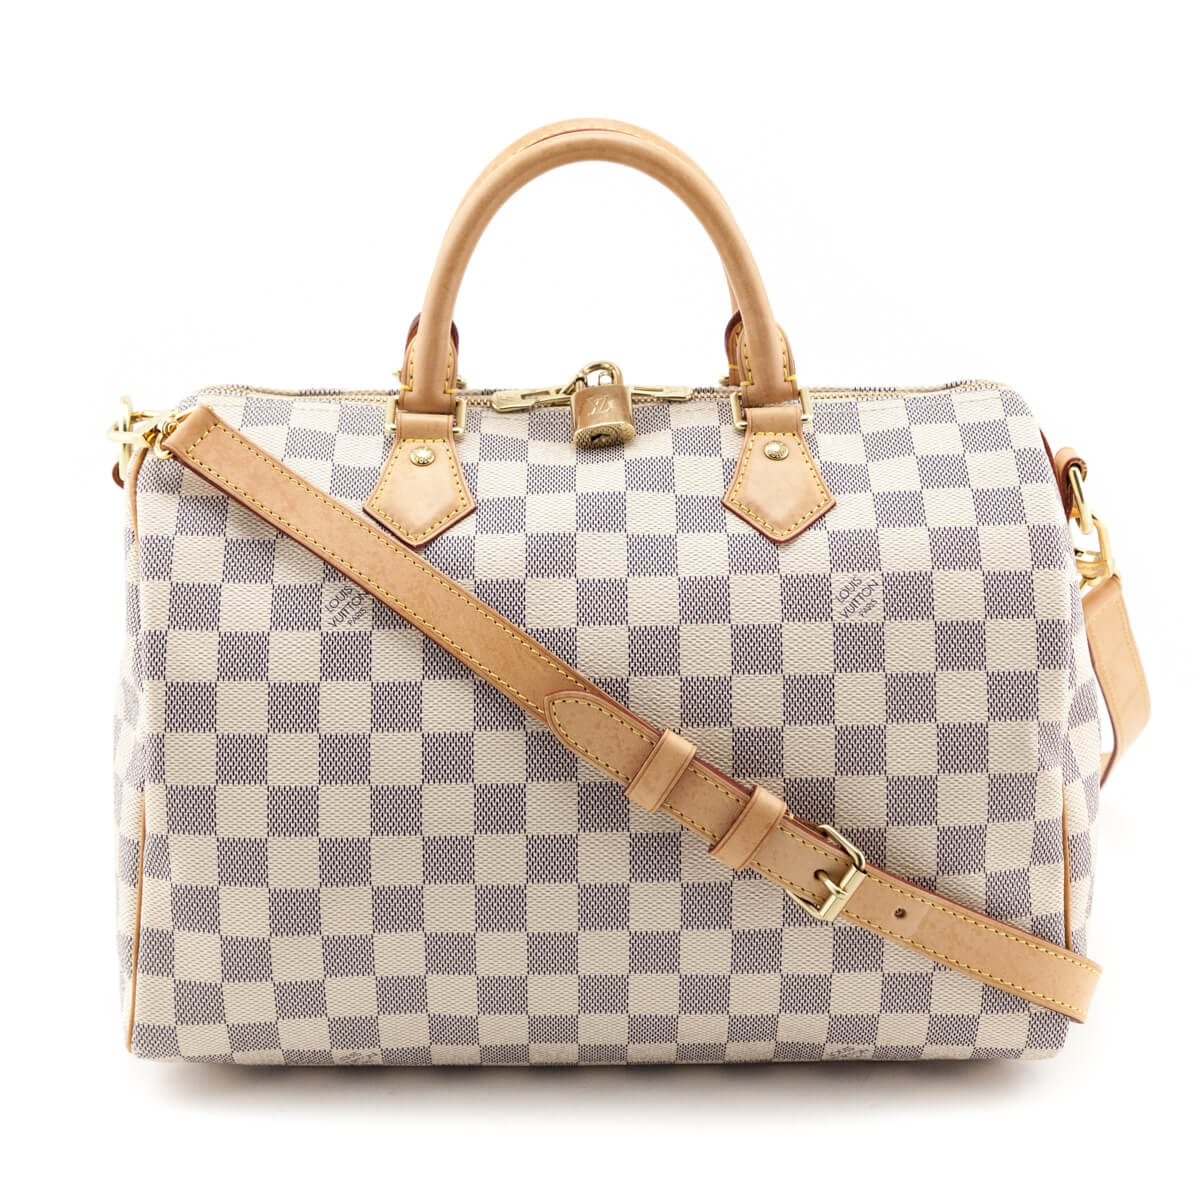 Louis Vuitton Damier Azur Speedy Bandouliere 30 Made in USA White N41001 Women's Handbag